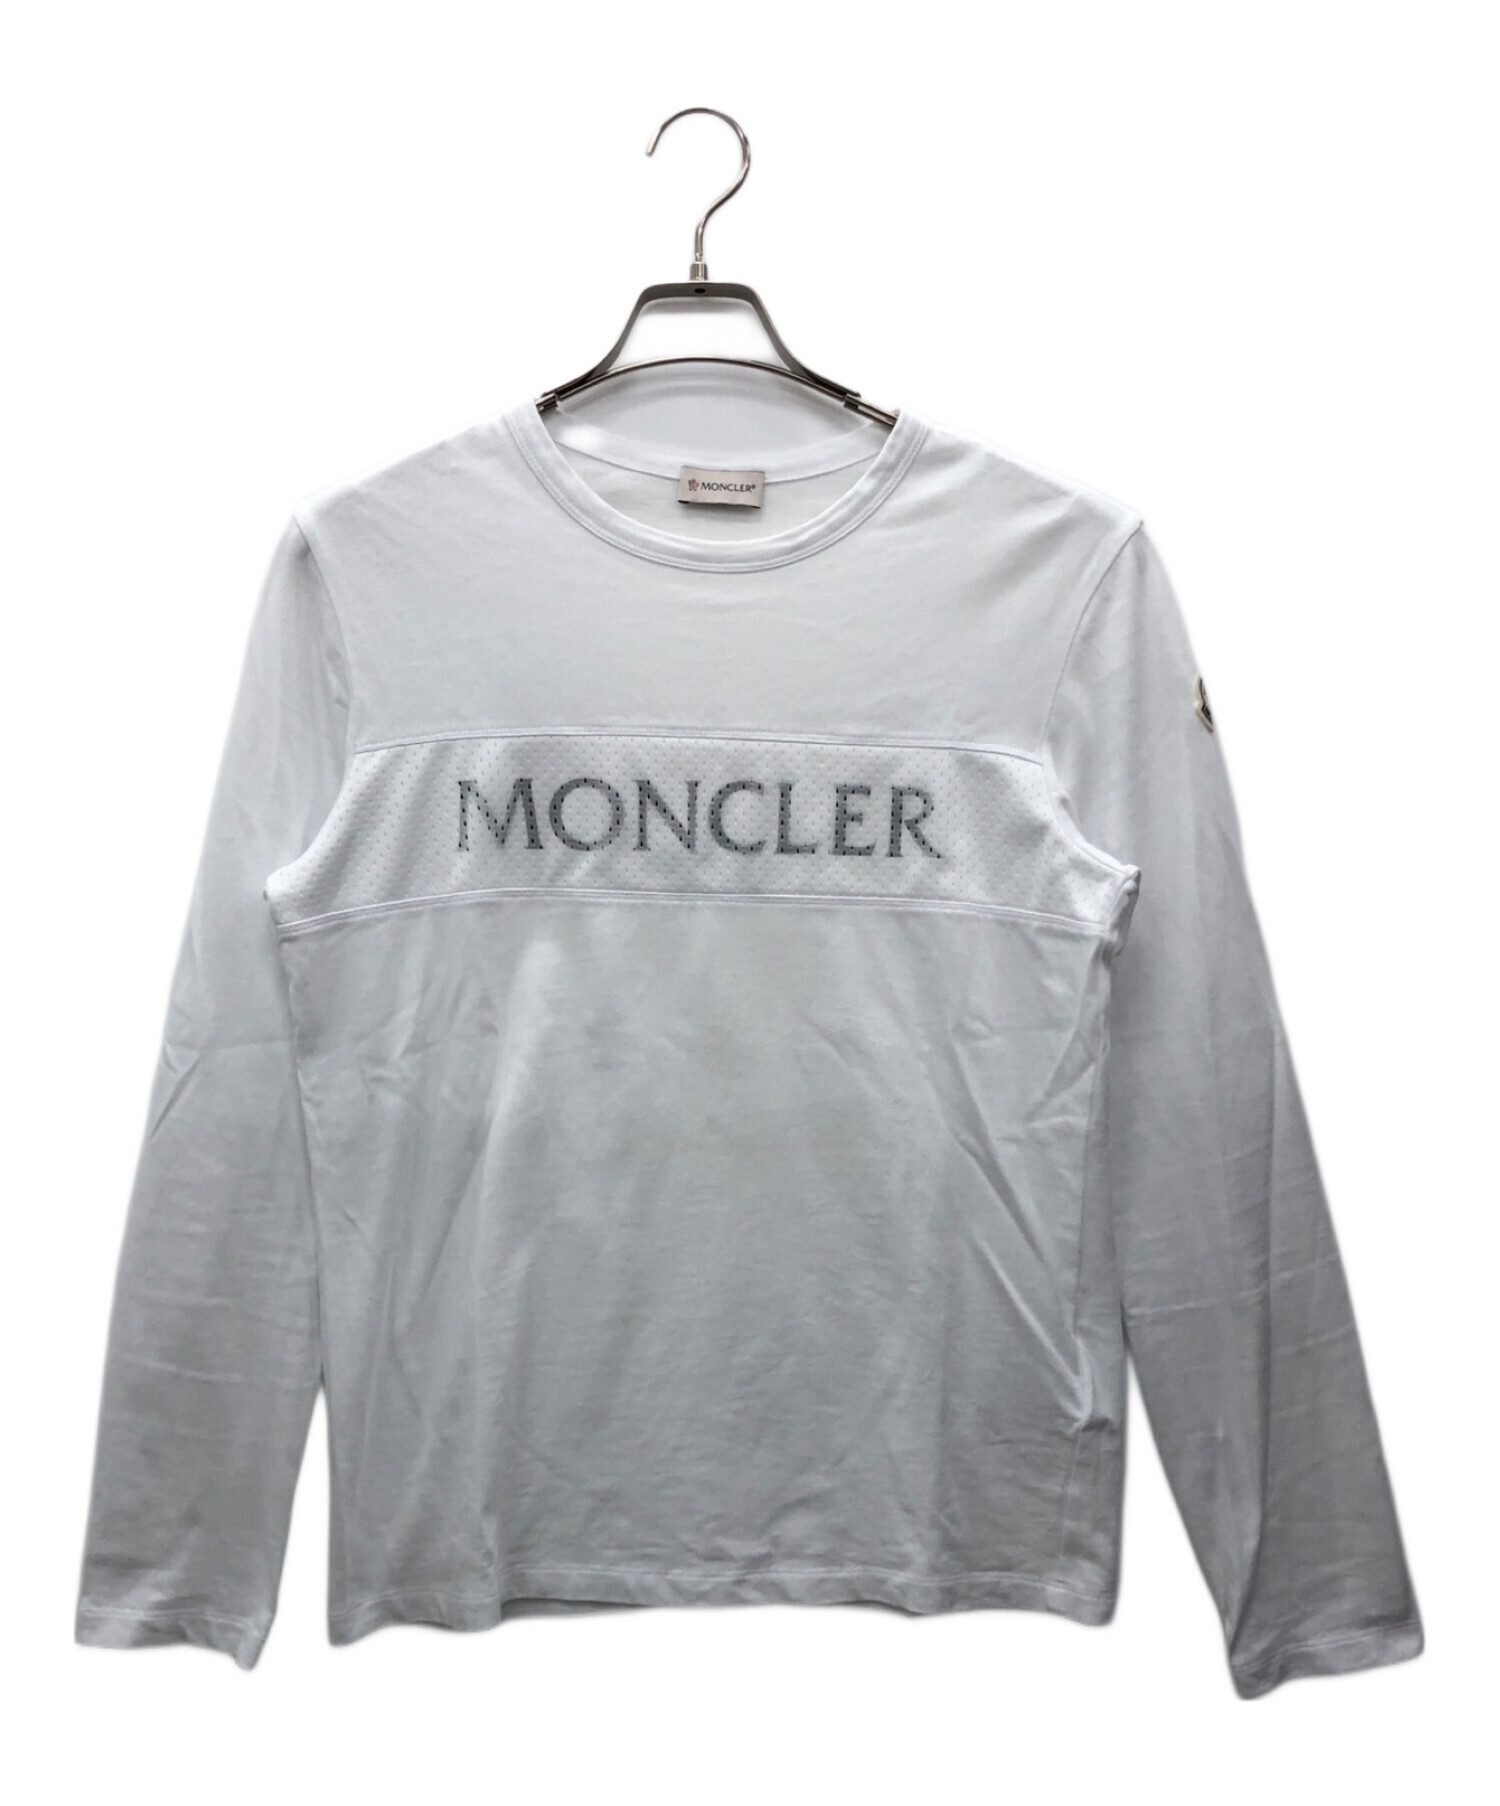 MONCLER (モンクレール) 長袖Tシャツ ホワイト サイズ:S